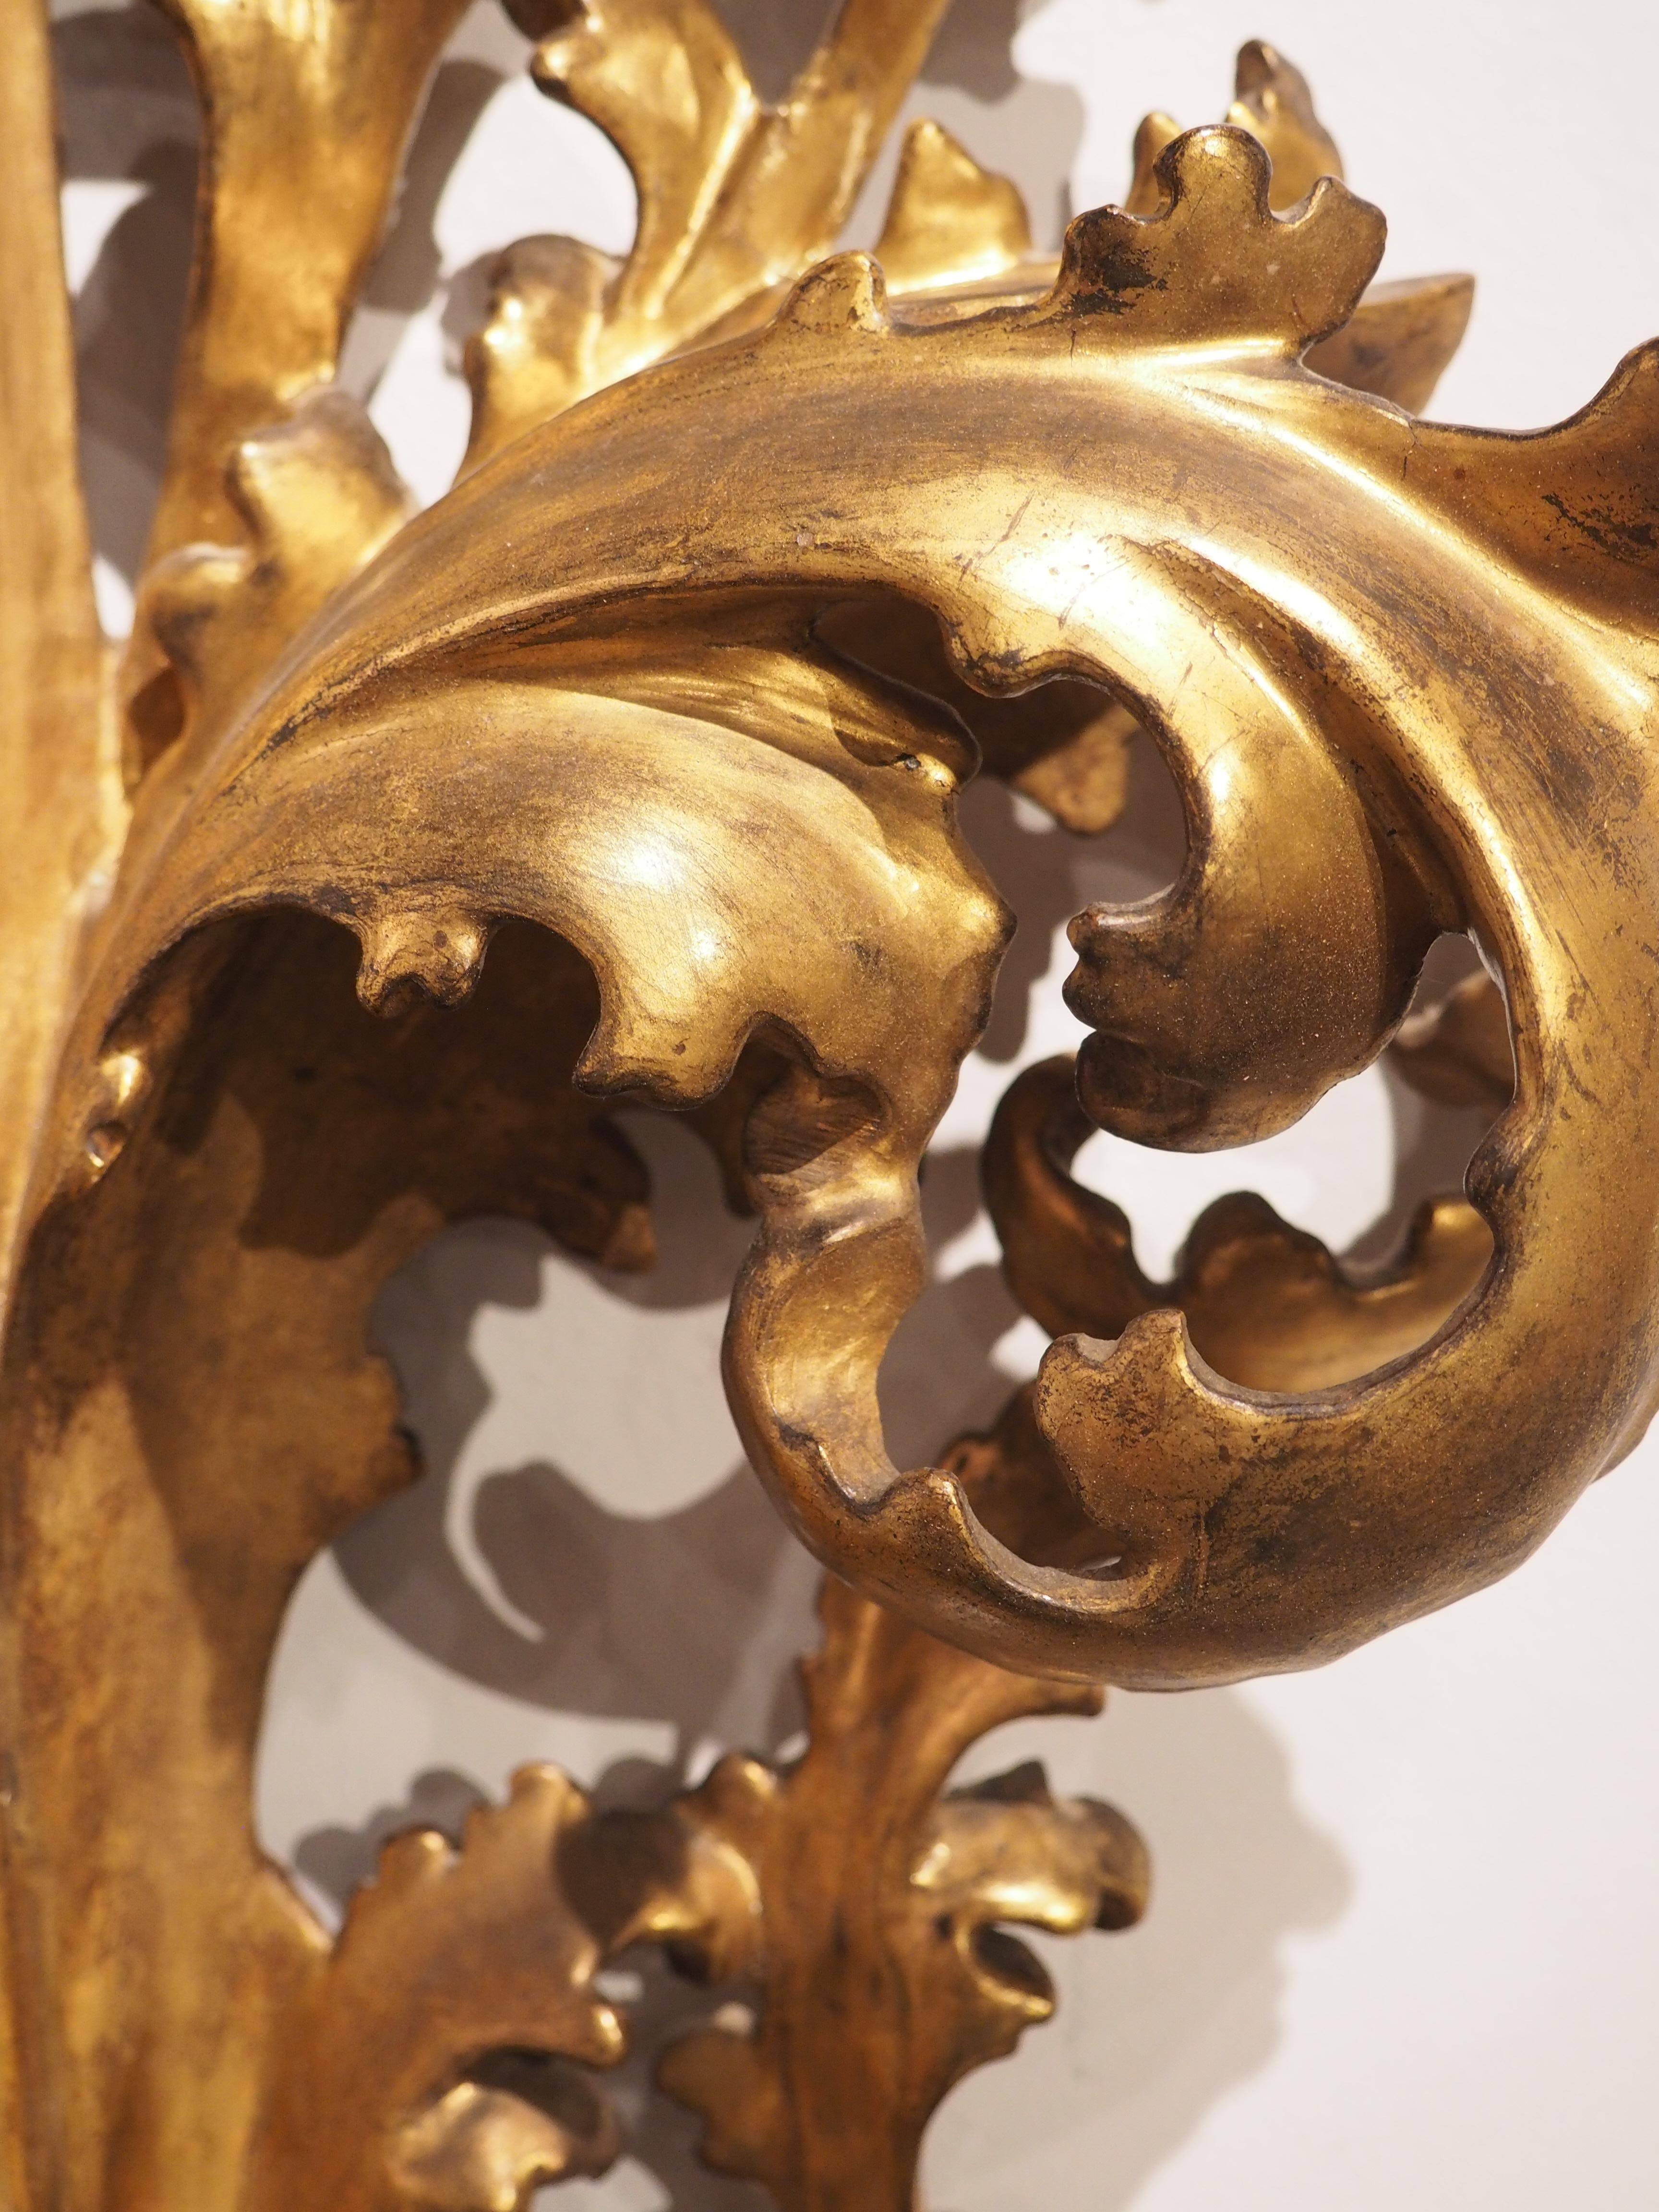 Originaire d'Italie, vers 1850, ce miroir Florentine en bois doré présente un extraordinaire déploiement de feuilles enroulées sculptées à la main sur plusieurs niveaux. Les feuilles d'acanthe épaisses ont un cœur en volute et des protubérances